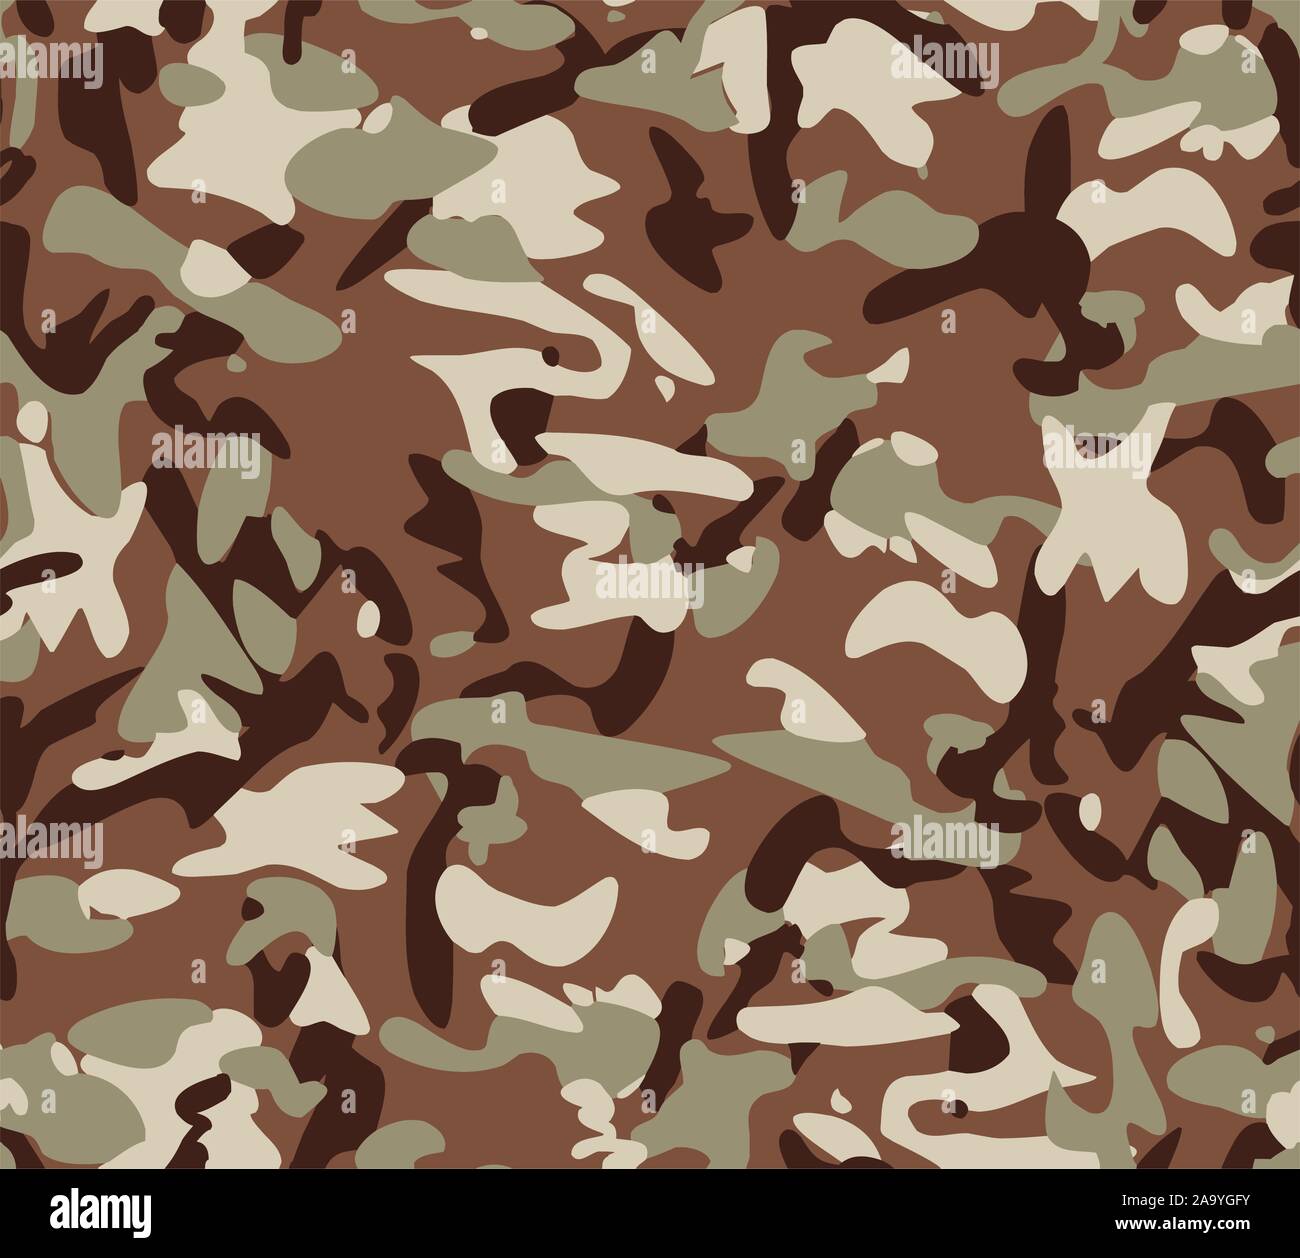 Camouflage nahtlose Muster, Uniform drucken für Gewebe, Armee, Soldat Textur Hintergrund. - Vektor Stock Vektor